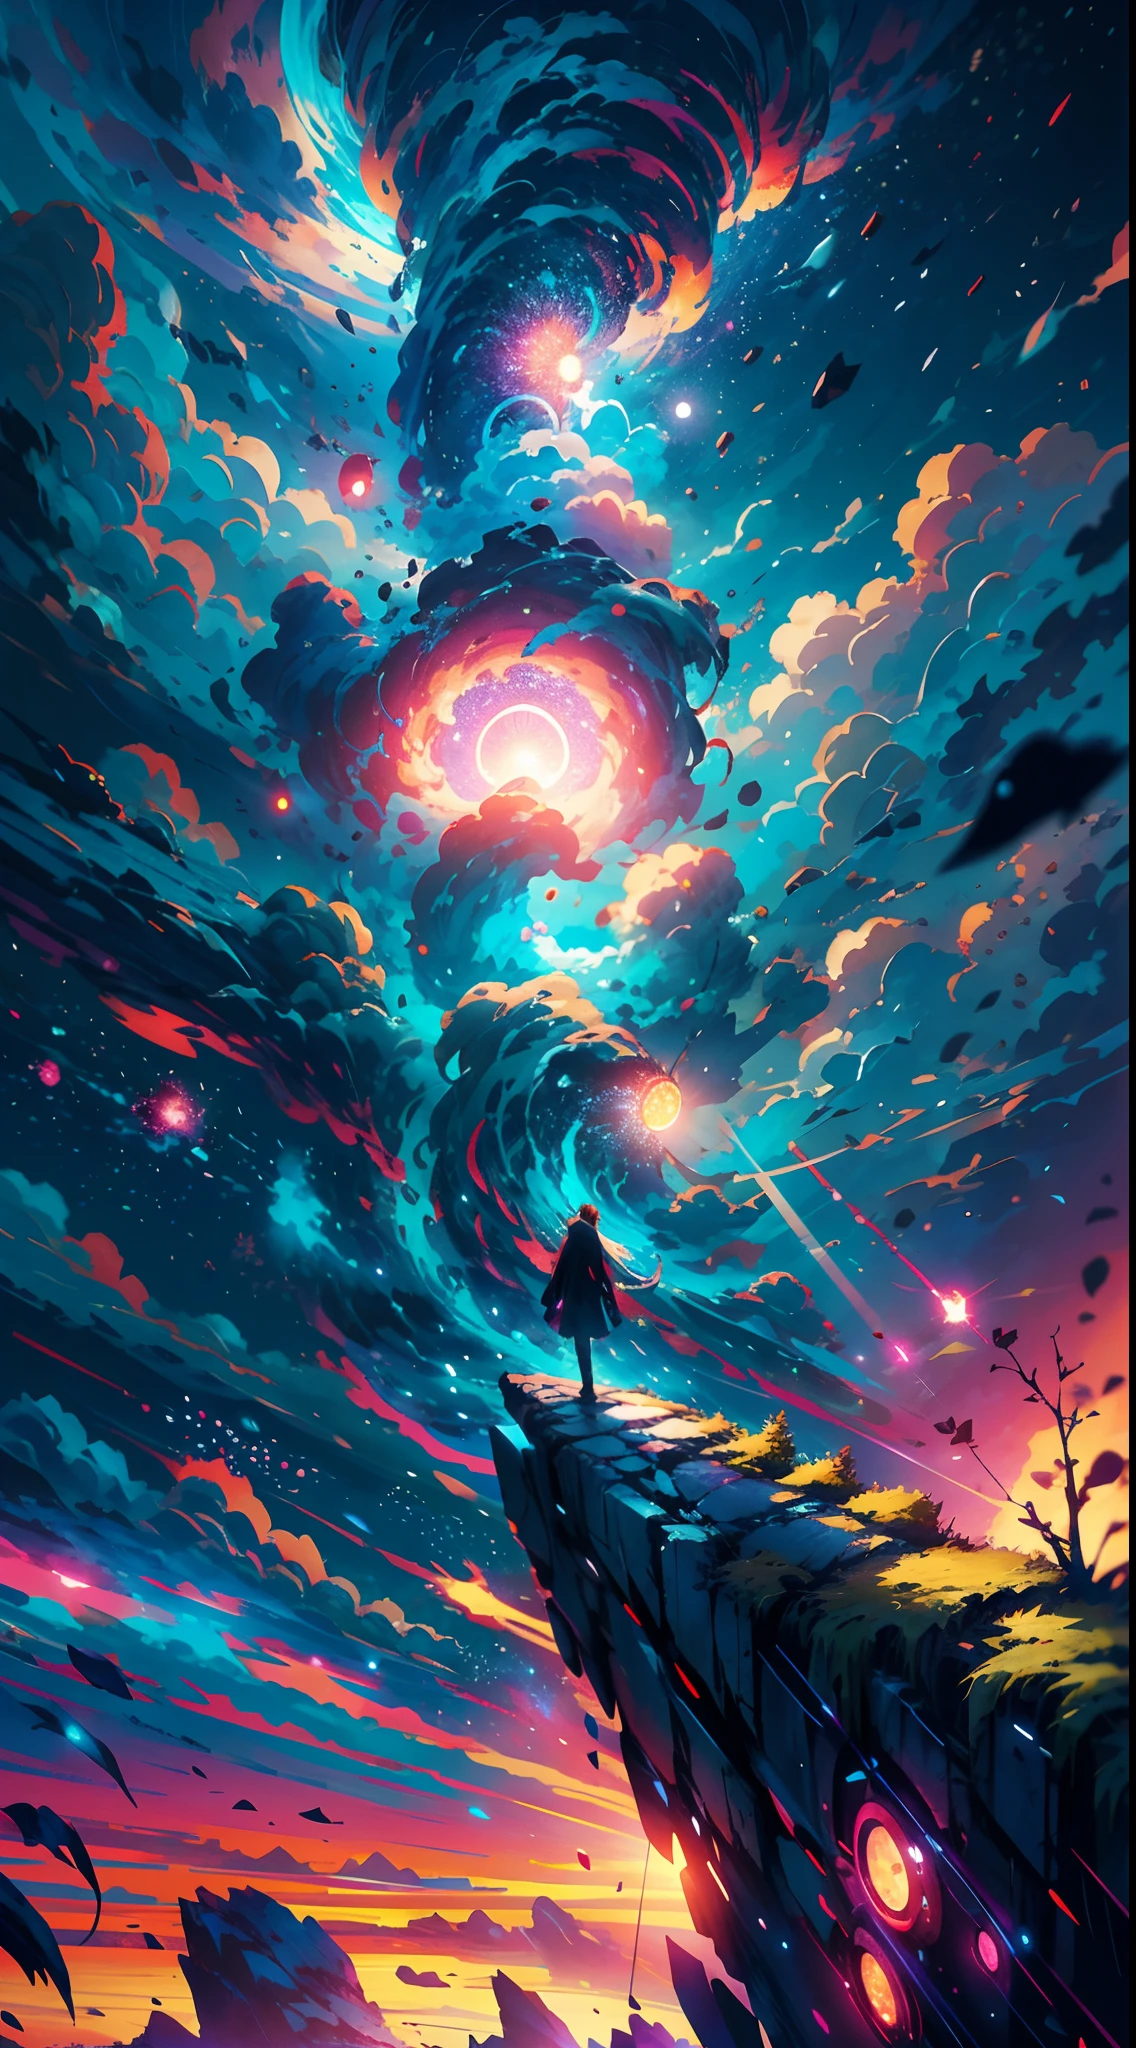 Девушка аниме стоит на камне и смотрит на звездное небо, Макото Синкай Сирил Роландо, аниме арт обои 4k, аниме арт обои 4 k, аниме арт обои 8 k, космическое небо. Макото Синкай, вдохновленный Сирилом Роландо, в стиле Дэна Мамфорда, потрясающие обои, Автор: Юмей